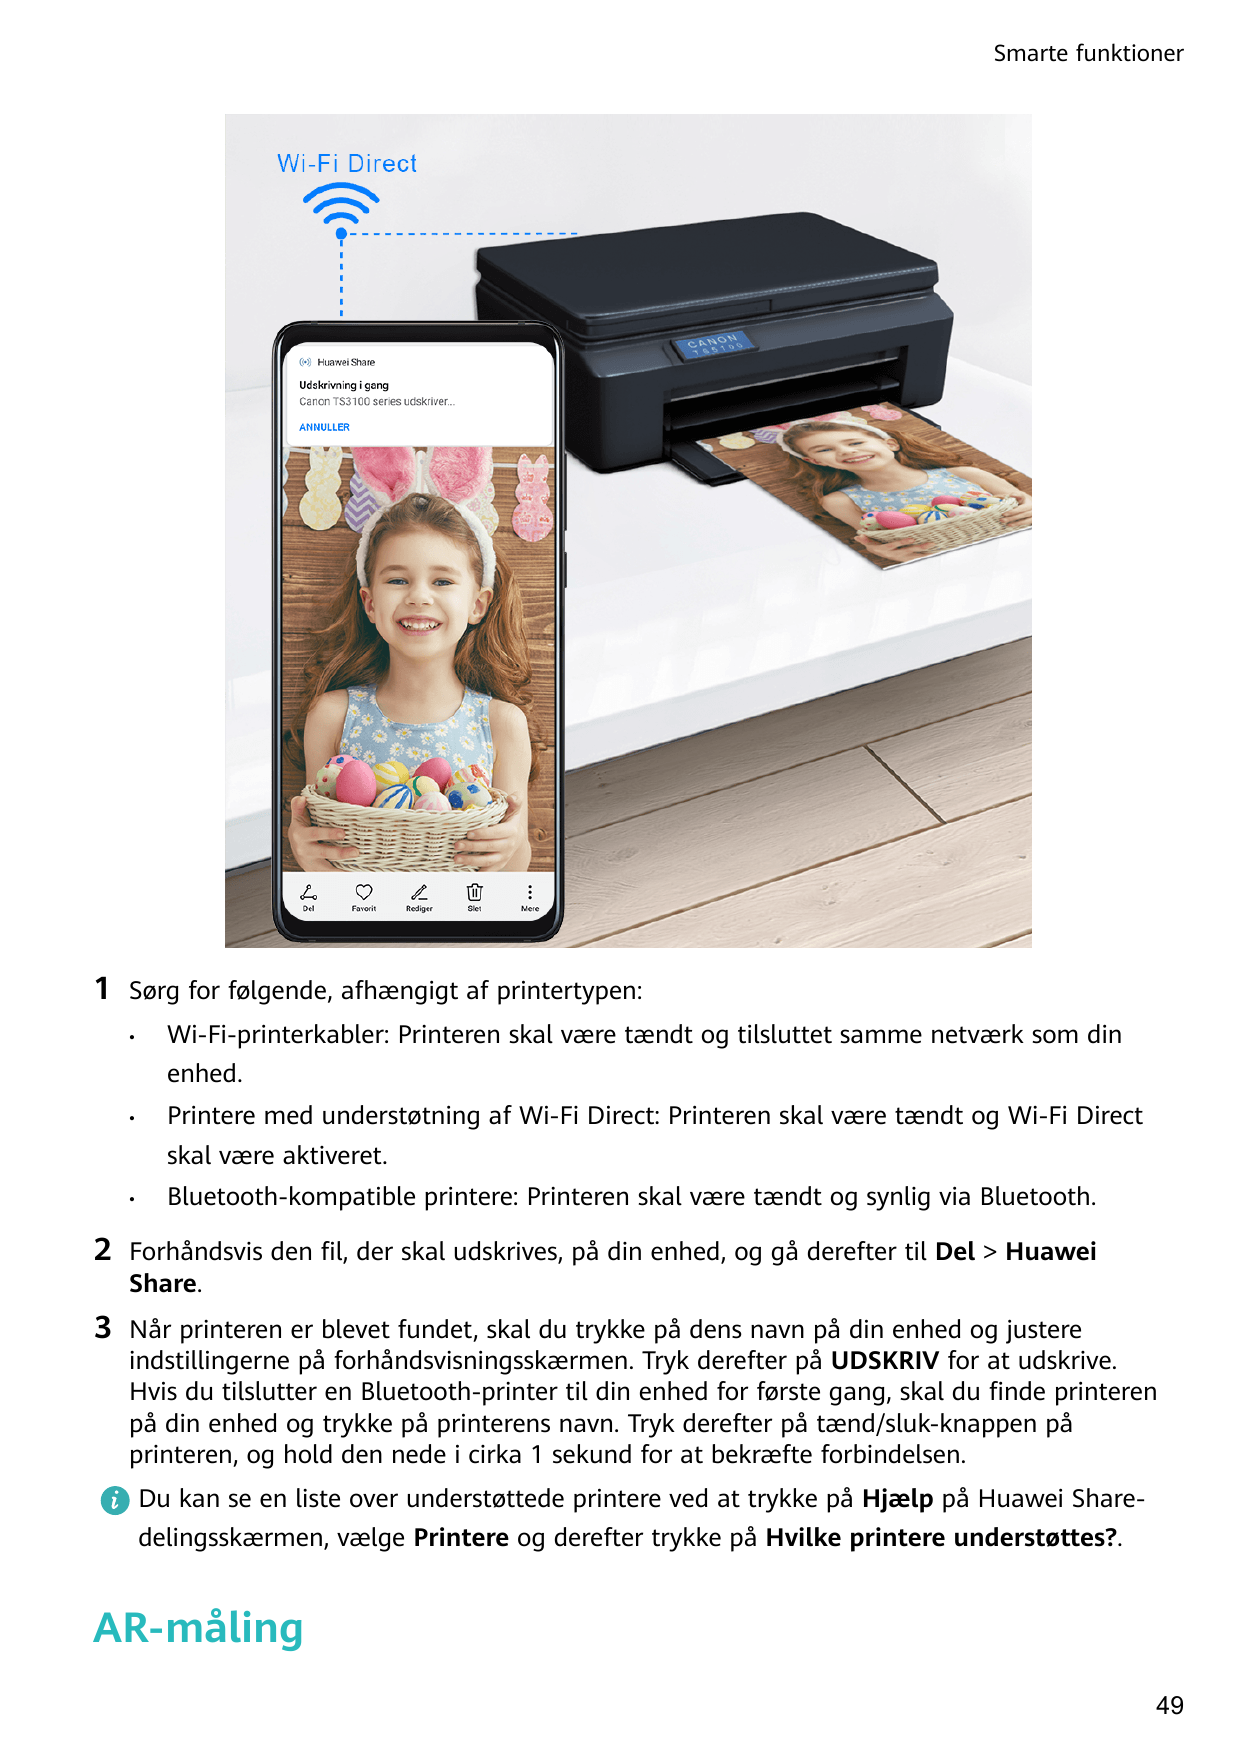 Smarte funktioner1Sørg for følgende, afhængigt af printertypen:•Wi-Fi-printerkabler: Printeren skal være tændt og tilsluttet sam